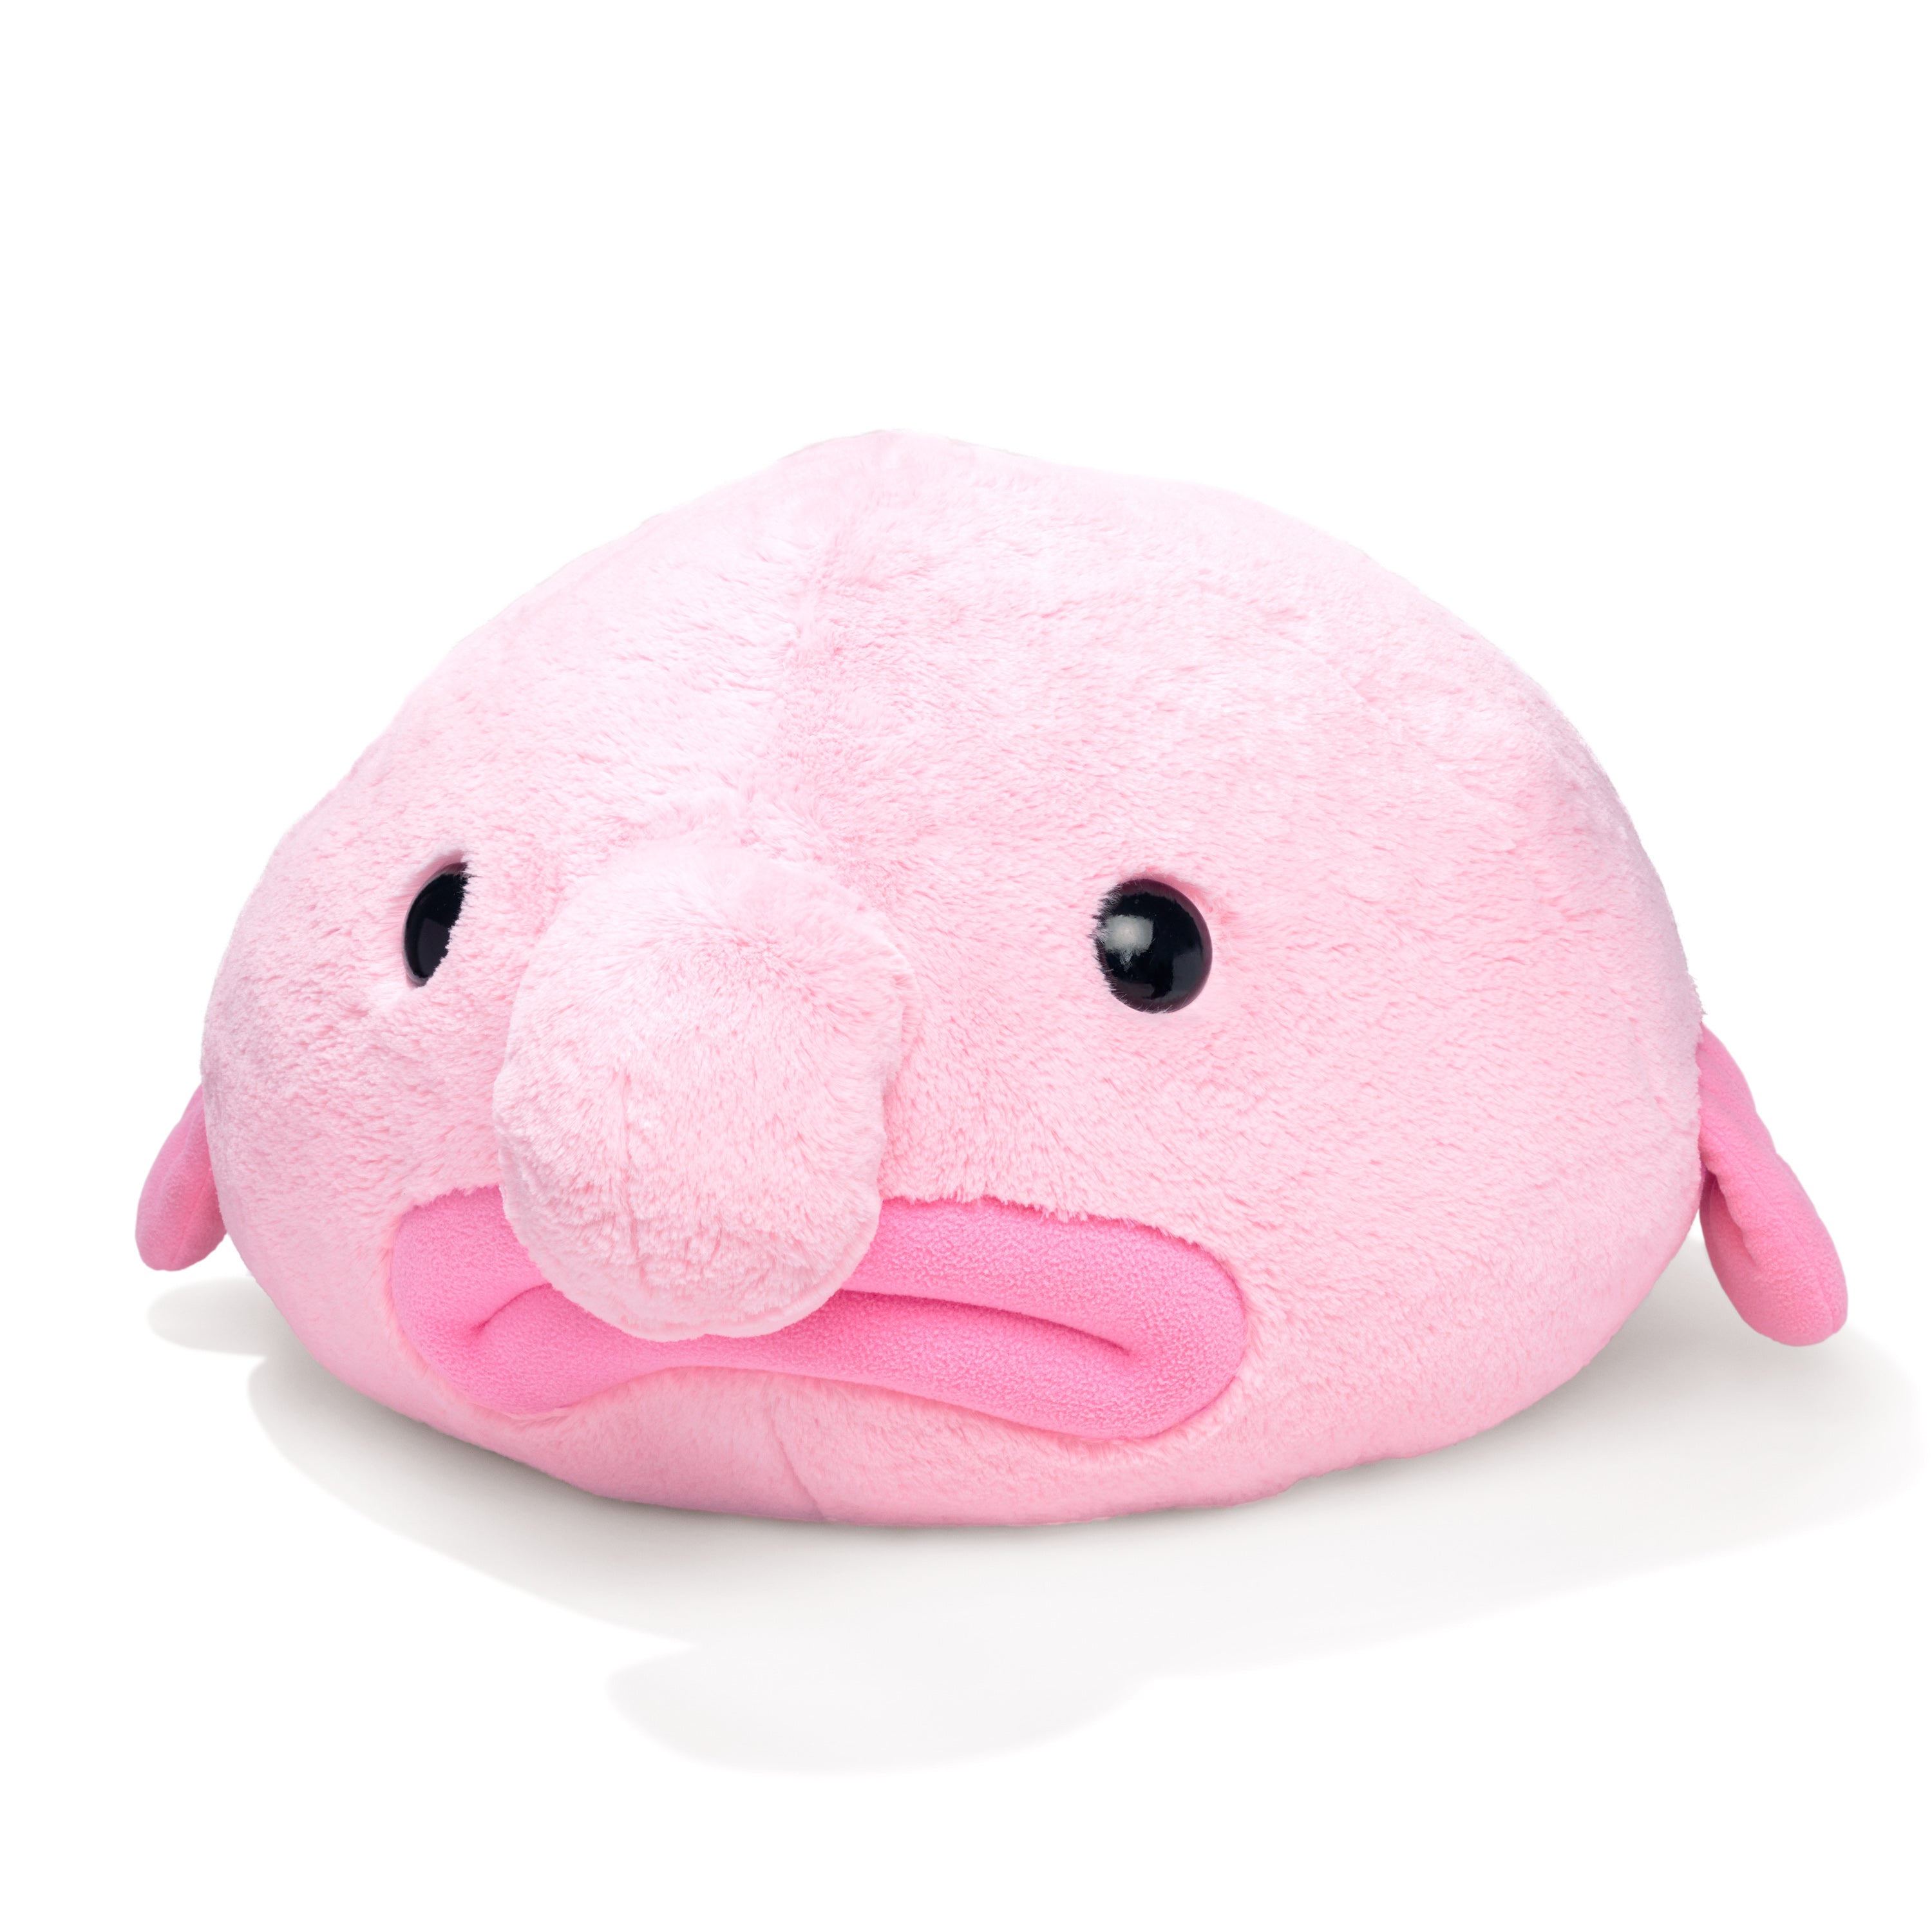 Stuffed Blobfish Plush